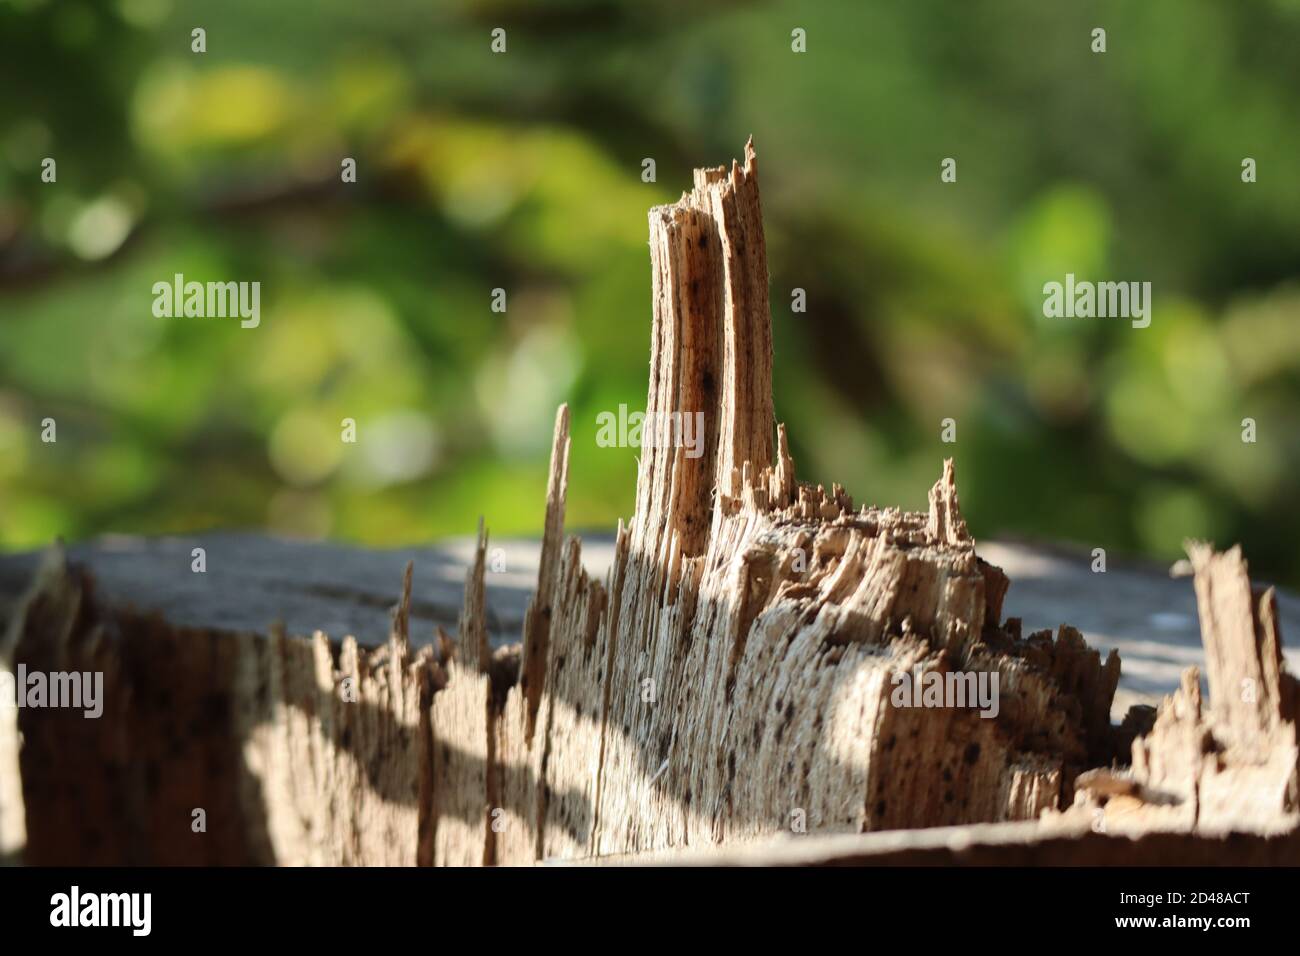 Holzstumpf, in der Natur geschossen, künstlerische Gestaltung auf dem Holz, Wald Hintergrund Stockfoto